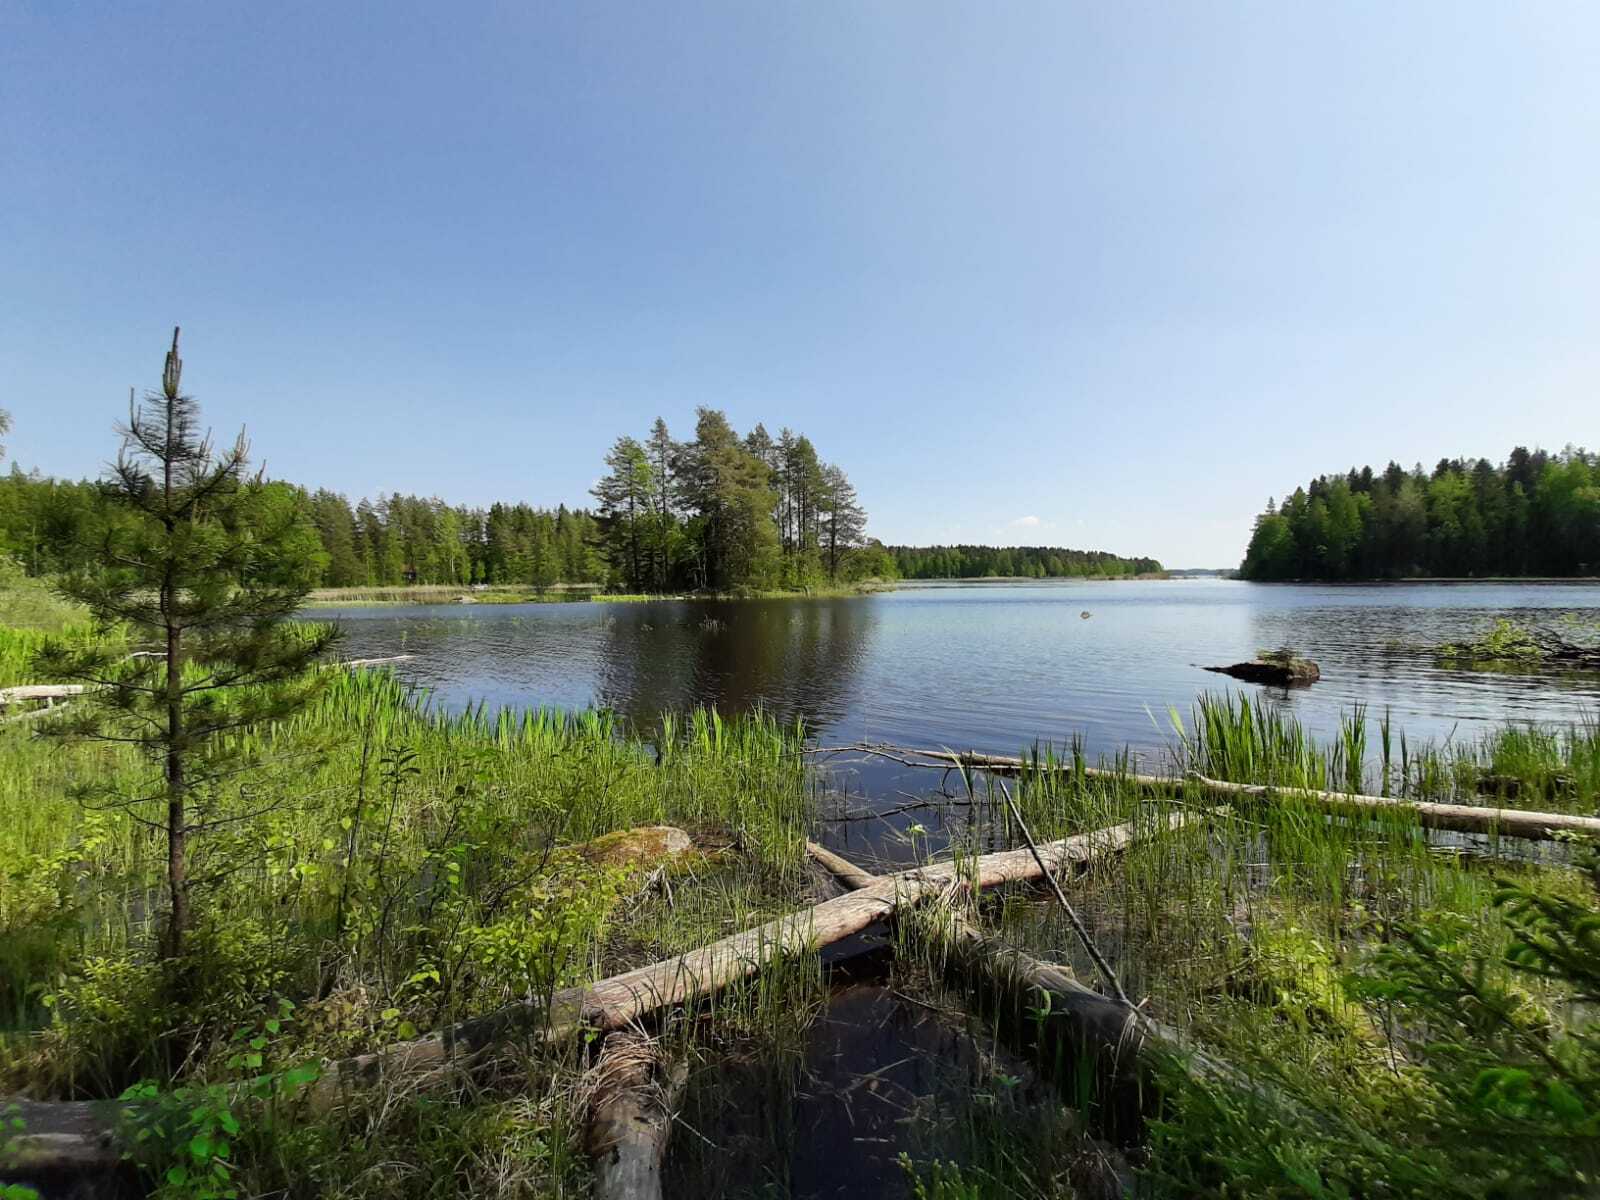 Kesäiset metsät reunustavat järveä. Etualalla on rantakasveja ja osin veteen kaatuneita puita.